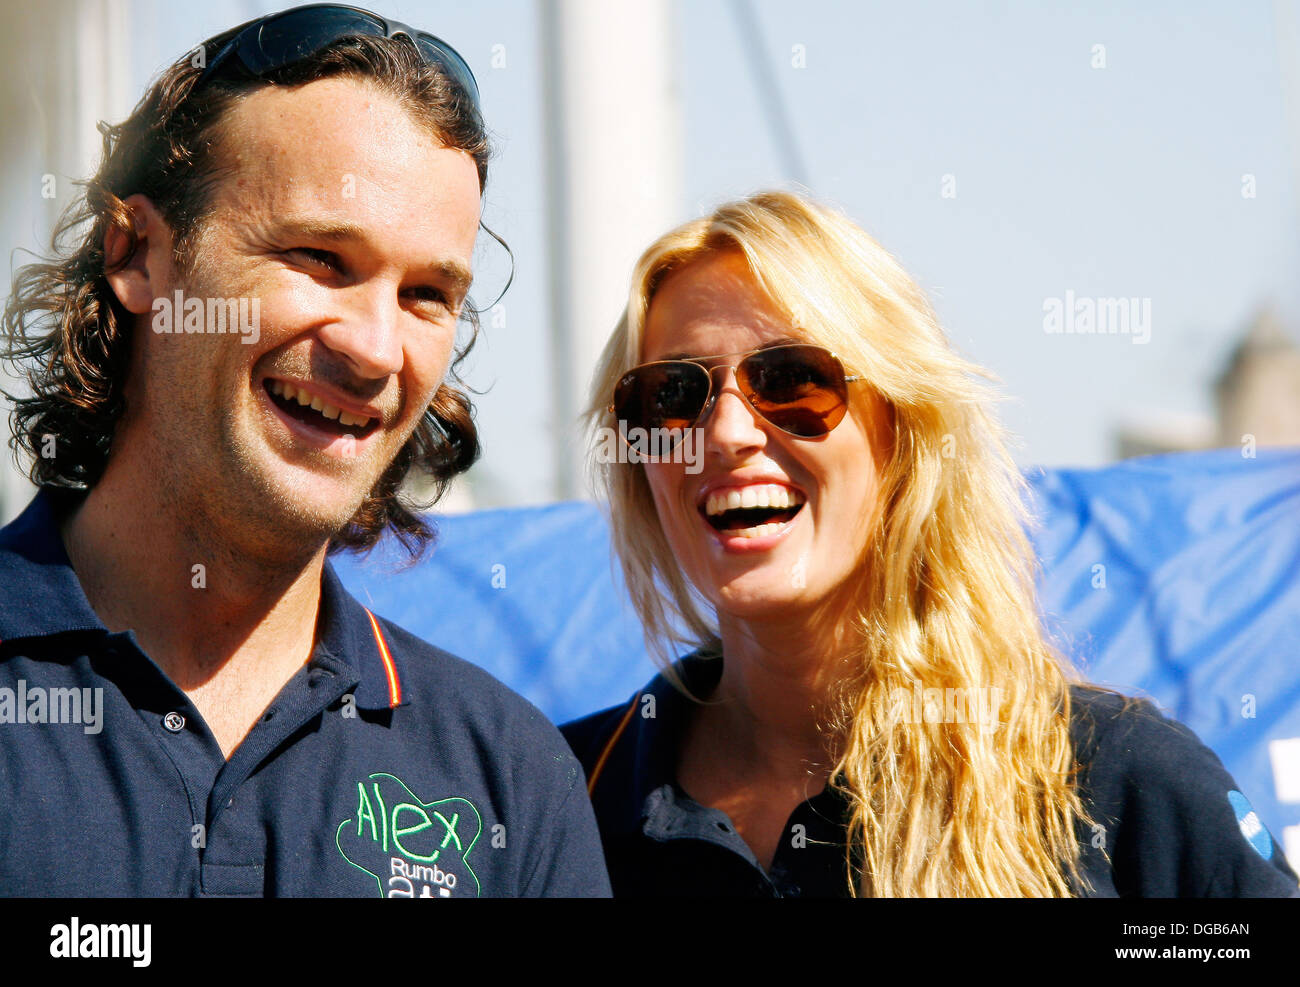 Carlos Moya and his wife actress Carolina Cerezuela seen in Palma de Mallorca, Spain Stock Photo